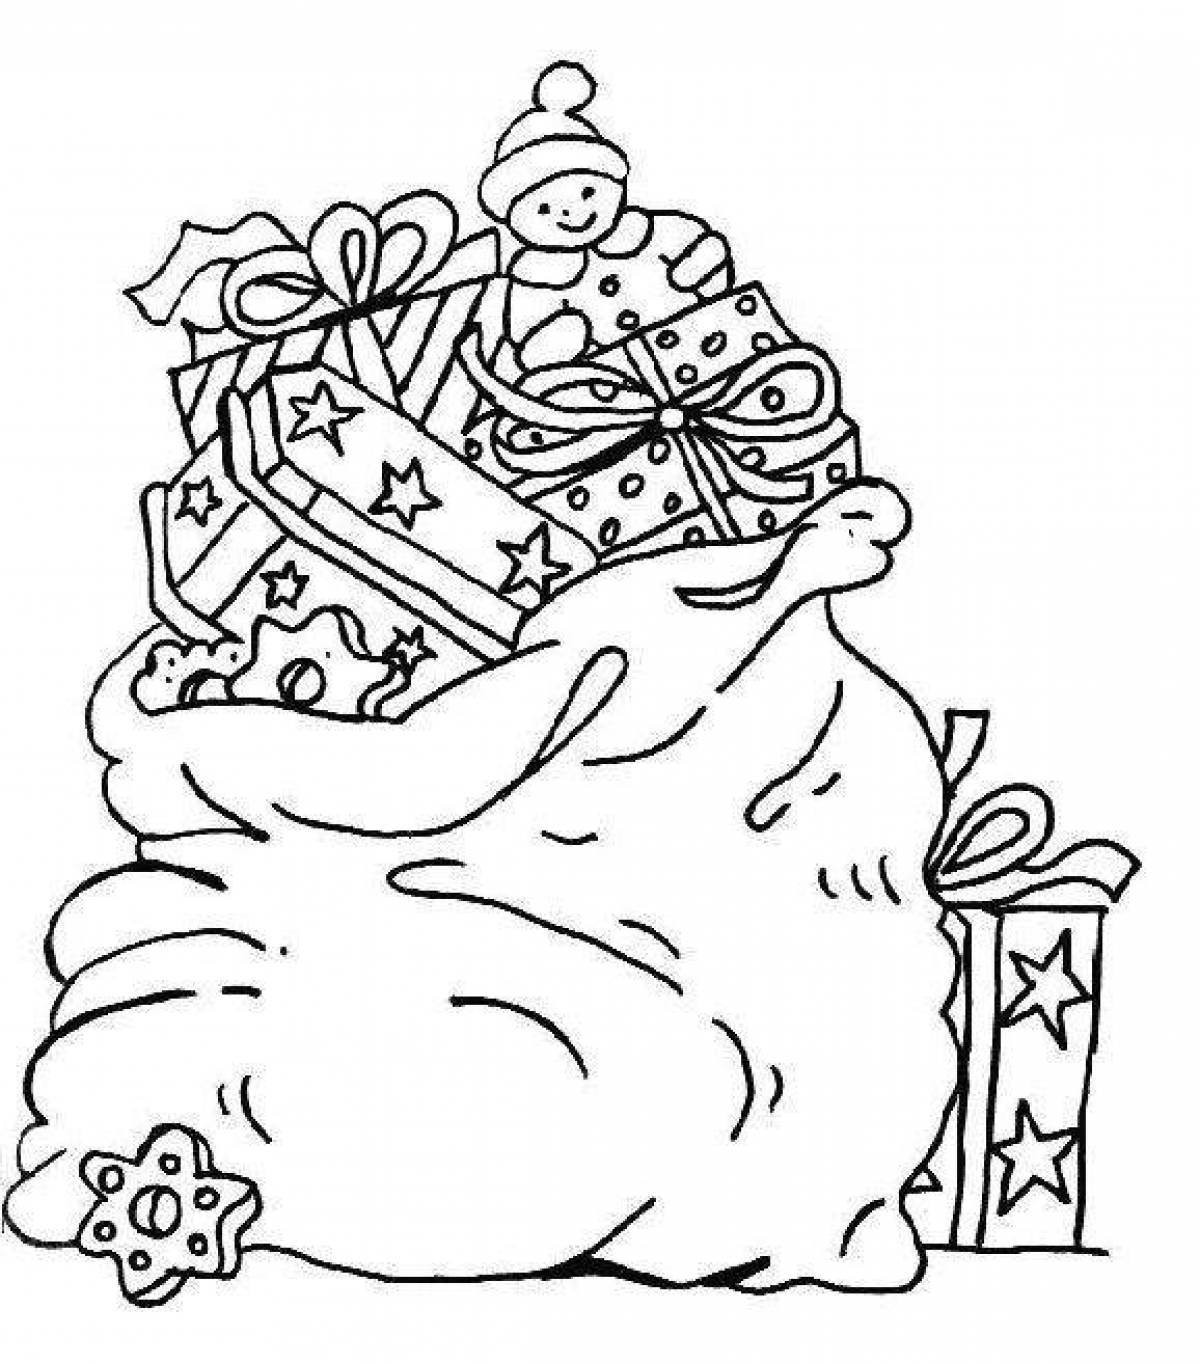 Набор для поделок Снеговик с подарками/Раскраска по дереву/Подарок на Новый год